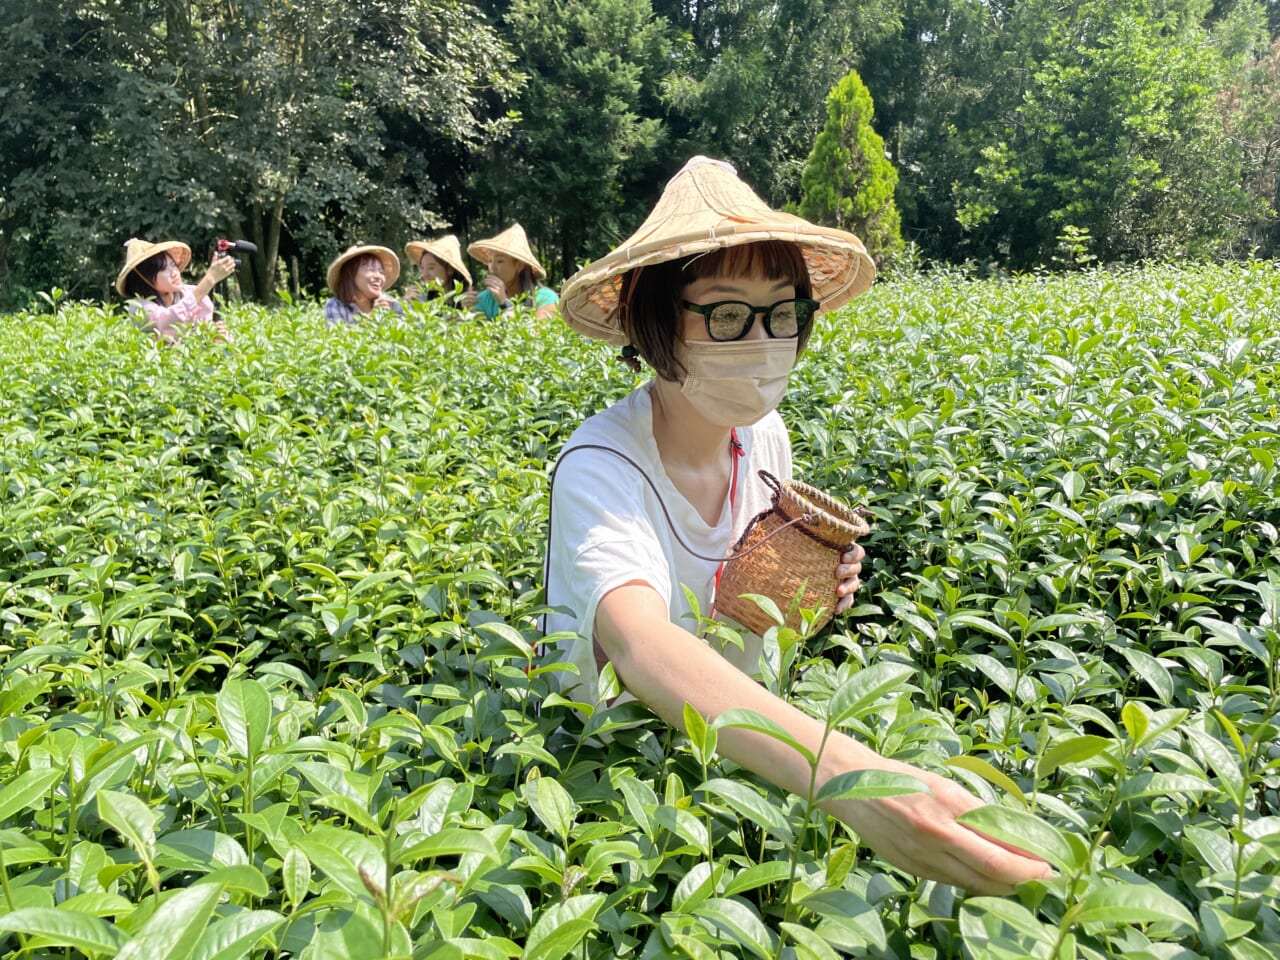 茶葉は「金萱茶」という台湾で生まれたミルキーな香りのお茶。ちょうどいま私が気に入ってるお茶も、金萱茶を紅茶のように重発酵させたものだったので、親近感が溢れ出し、張り切って三角帽子を被る。東龍製茶の若夫婦が始めた、山中茶學の体験コースです。